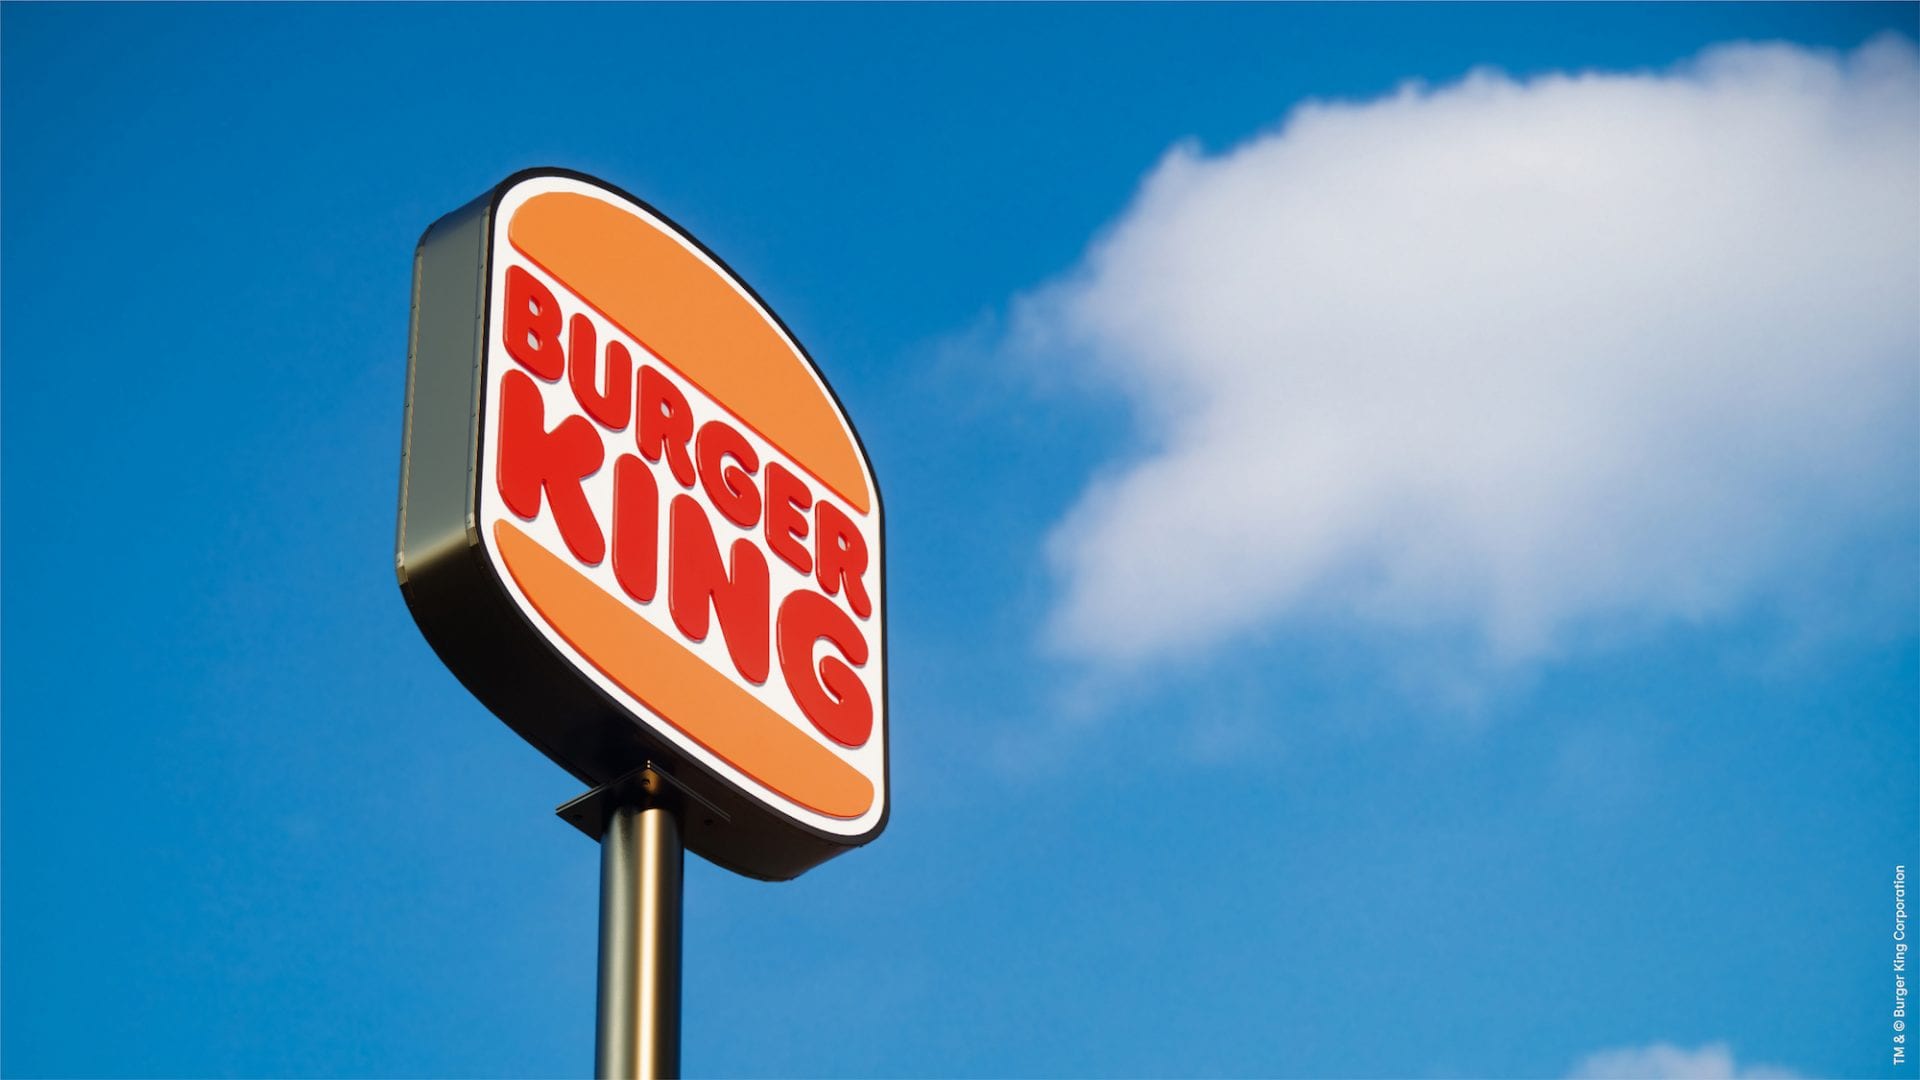 Nouveau branding de Burger King